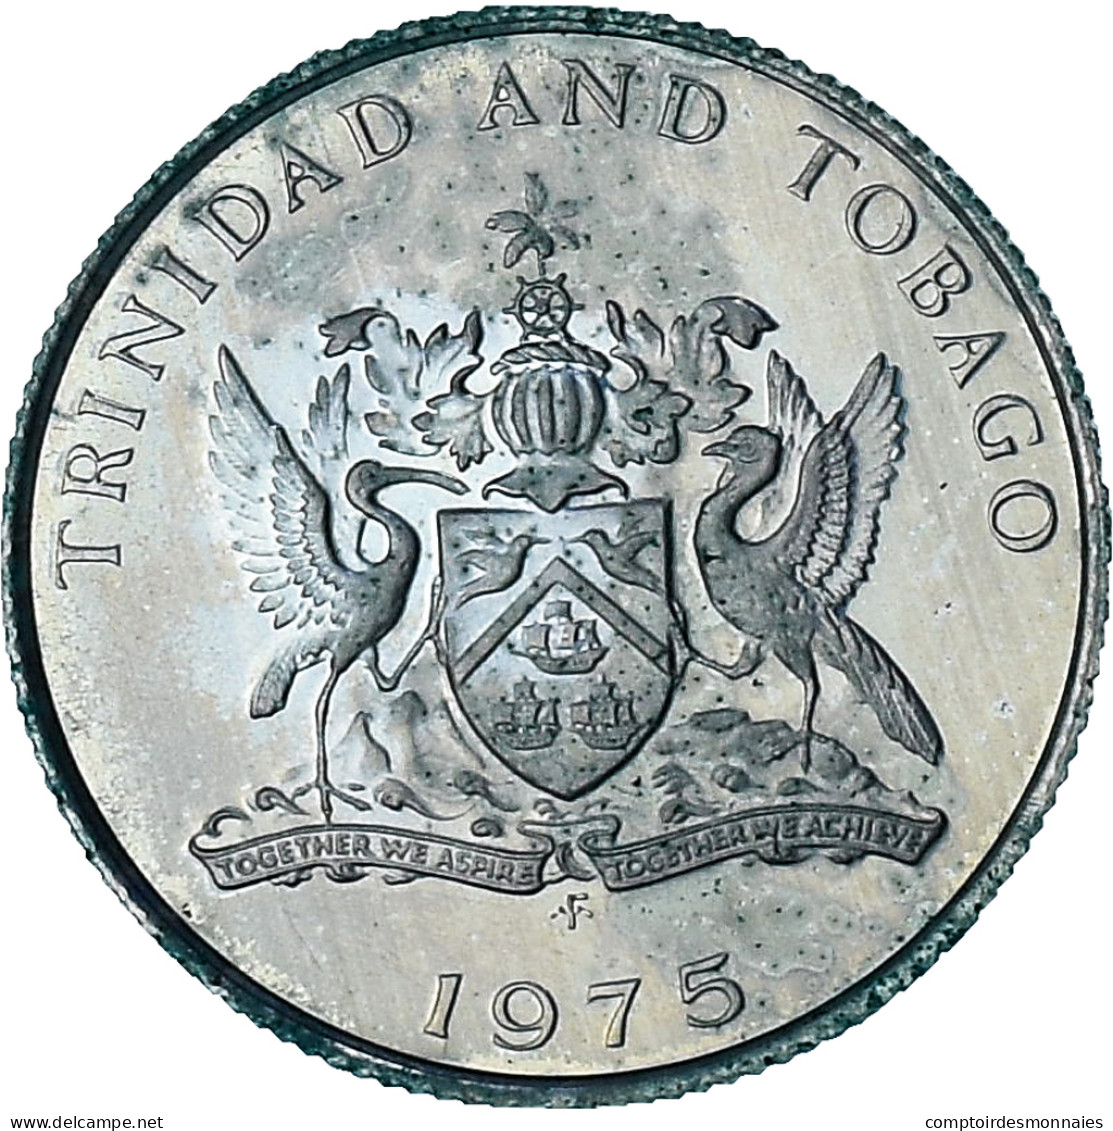 Trinité-et-Tobago, 10 Cents, 1975, Proof, SPL+, Du Cupronickel, KM:27 - Trinidad & Tobago